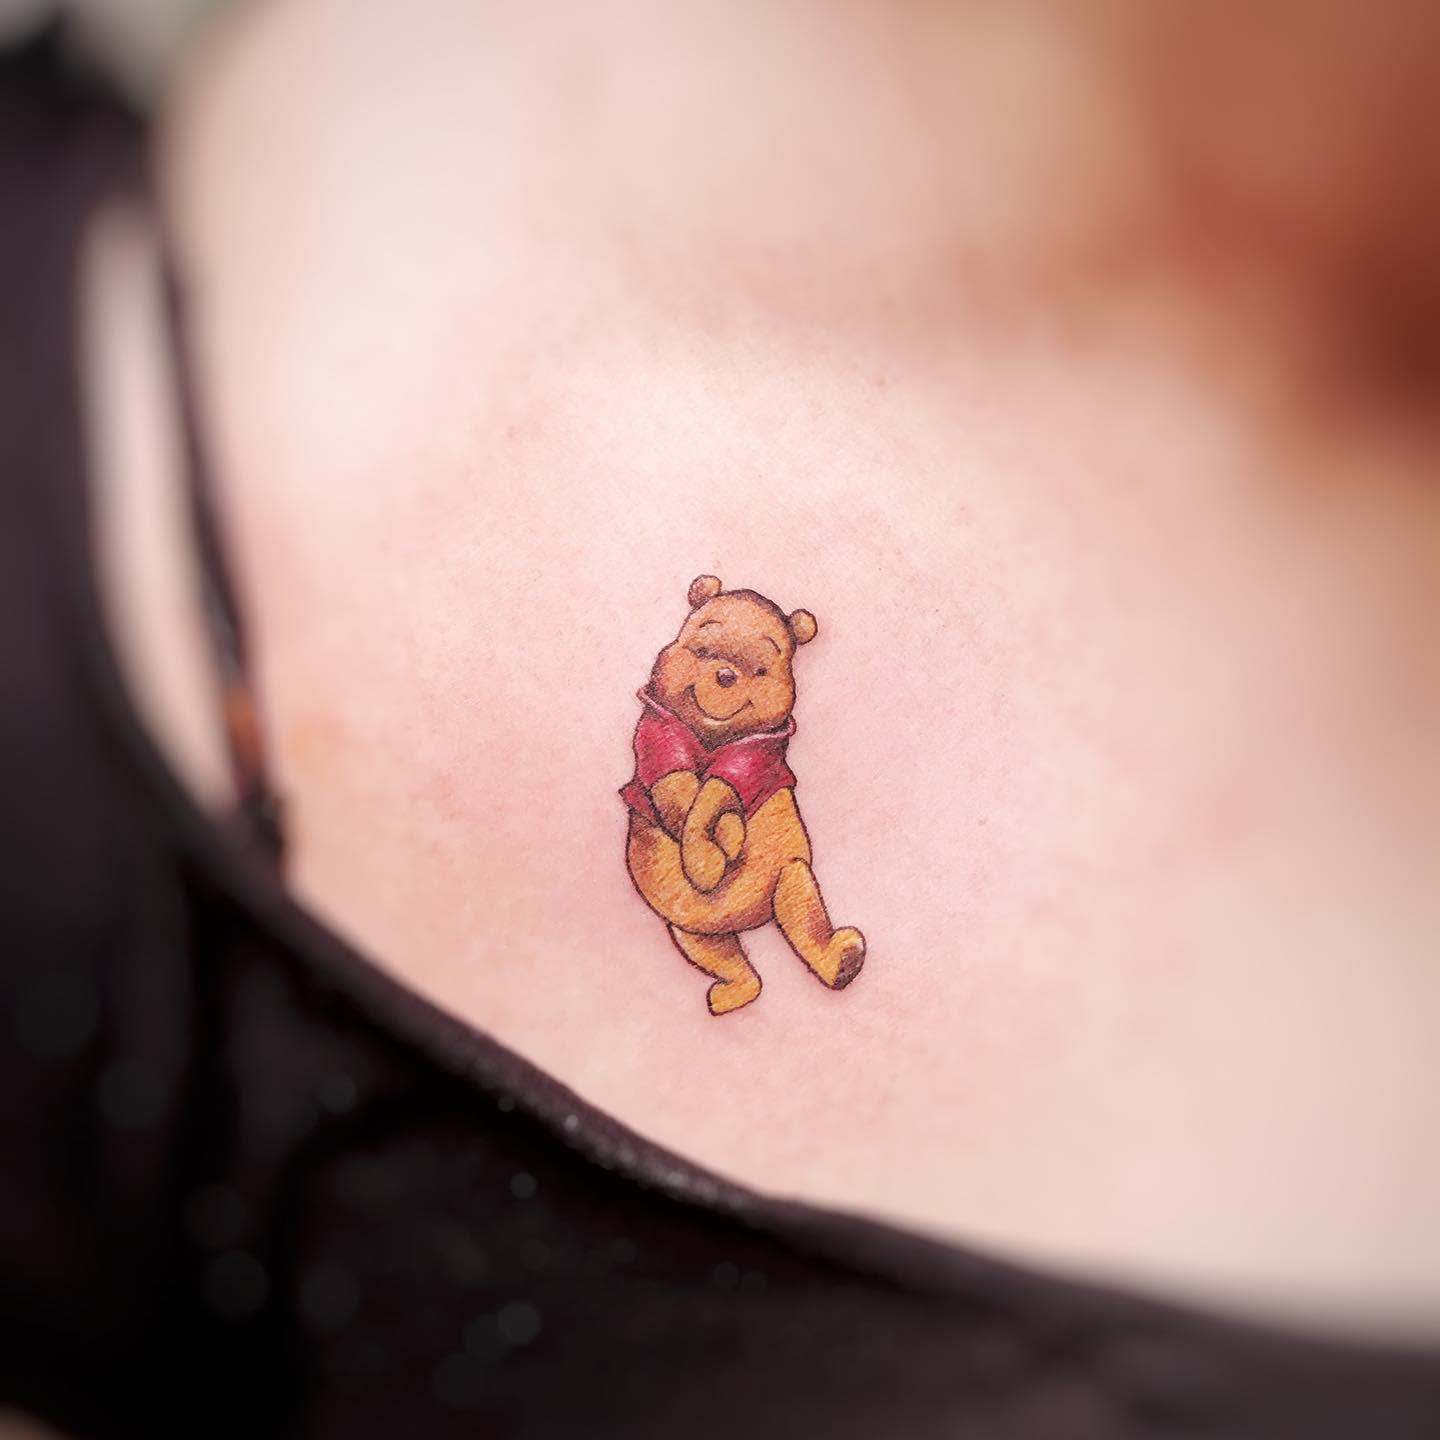 Tatuaje pequeño de Winnie the Pooh -dufftattoo